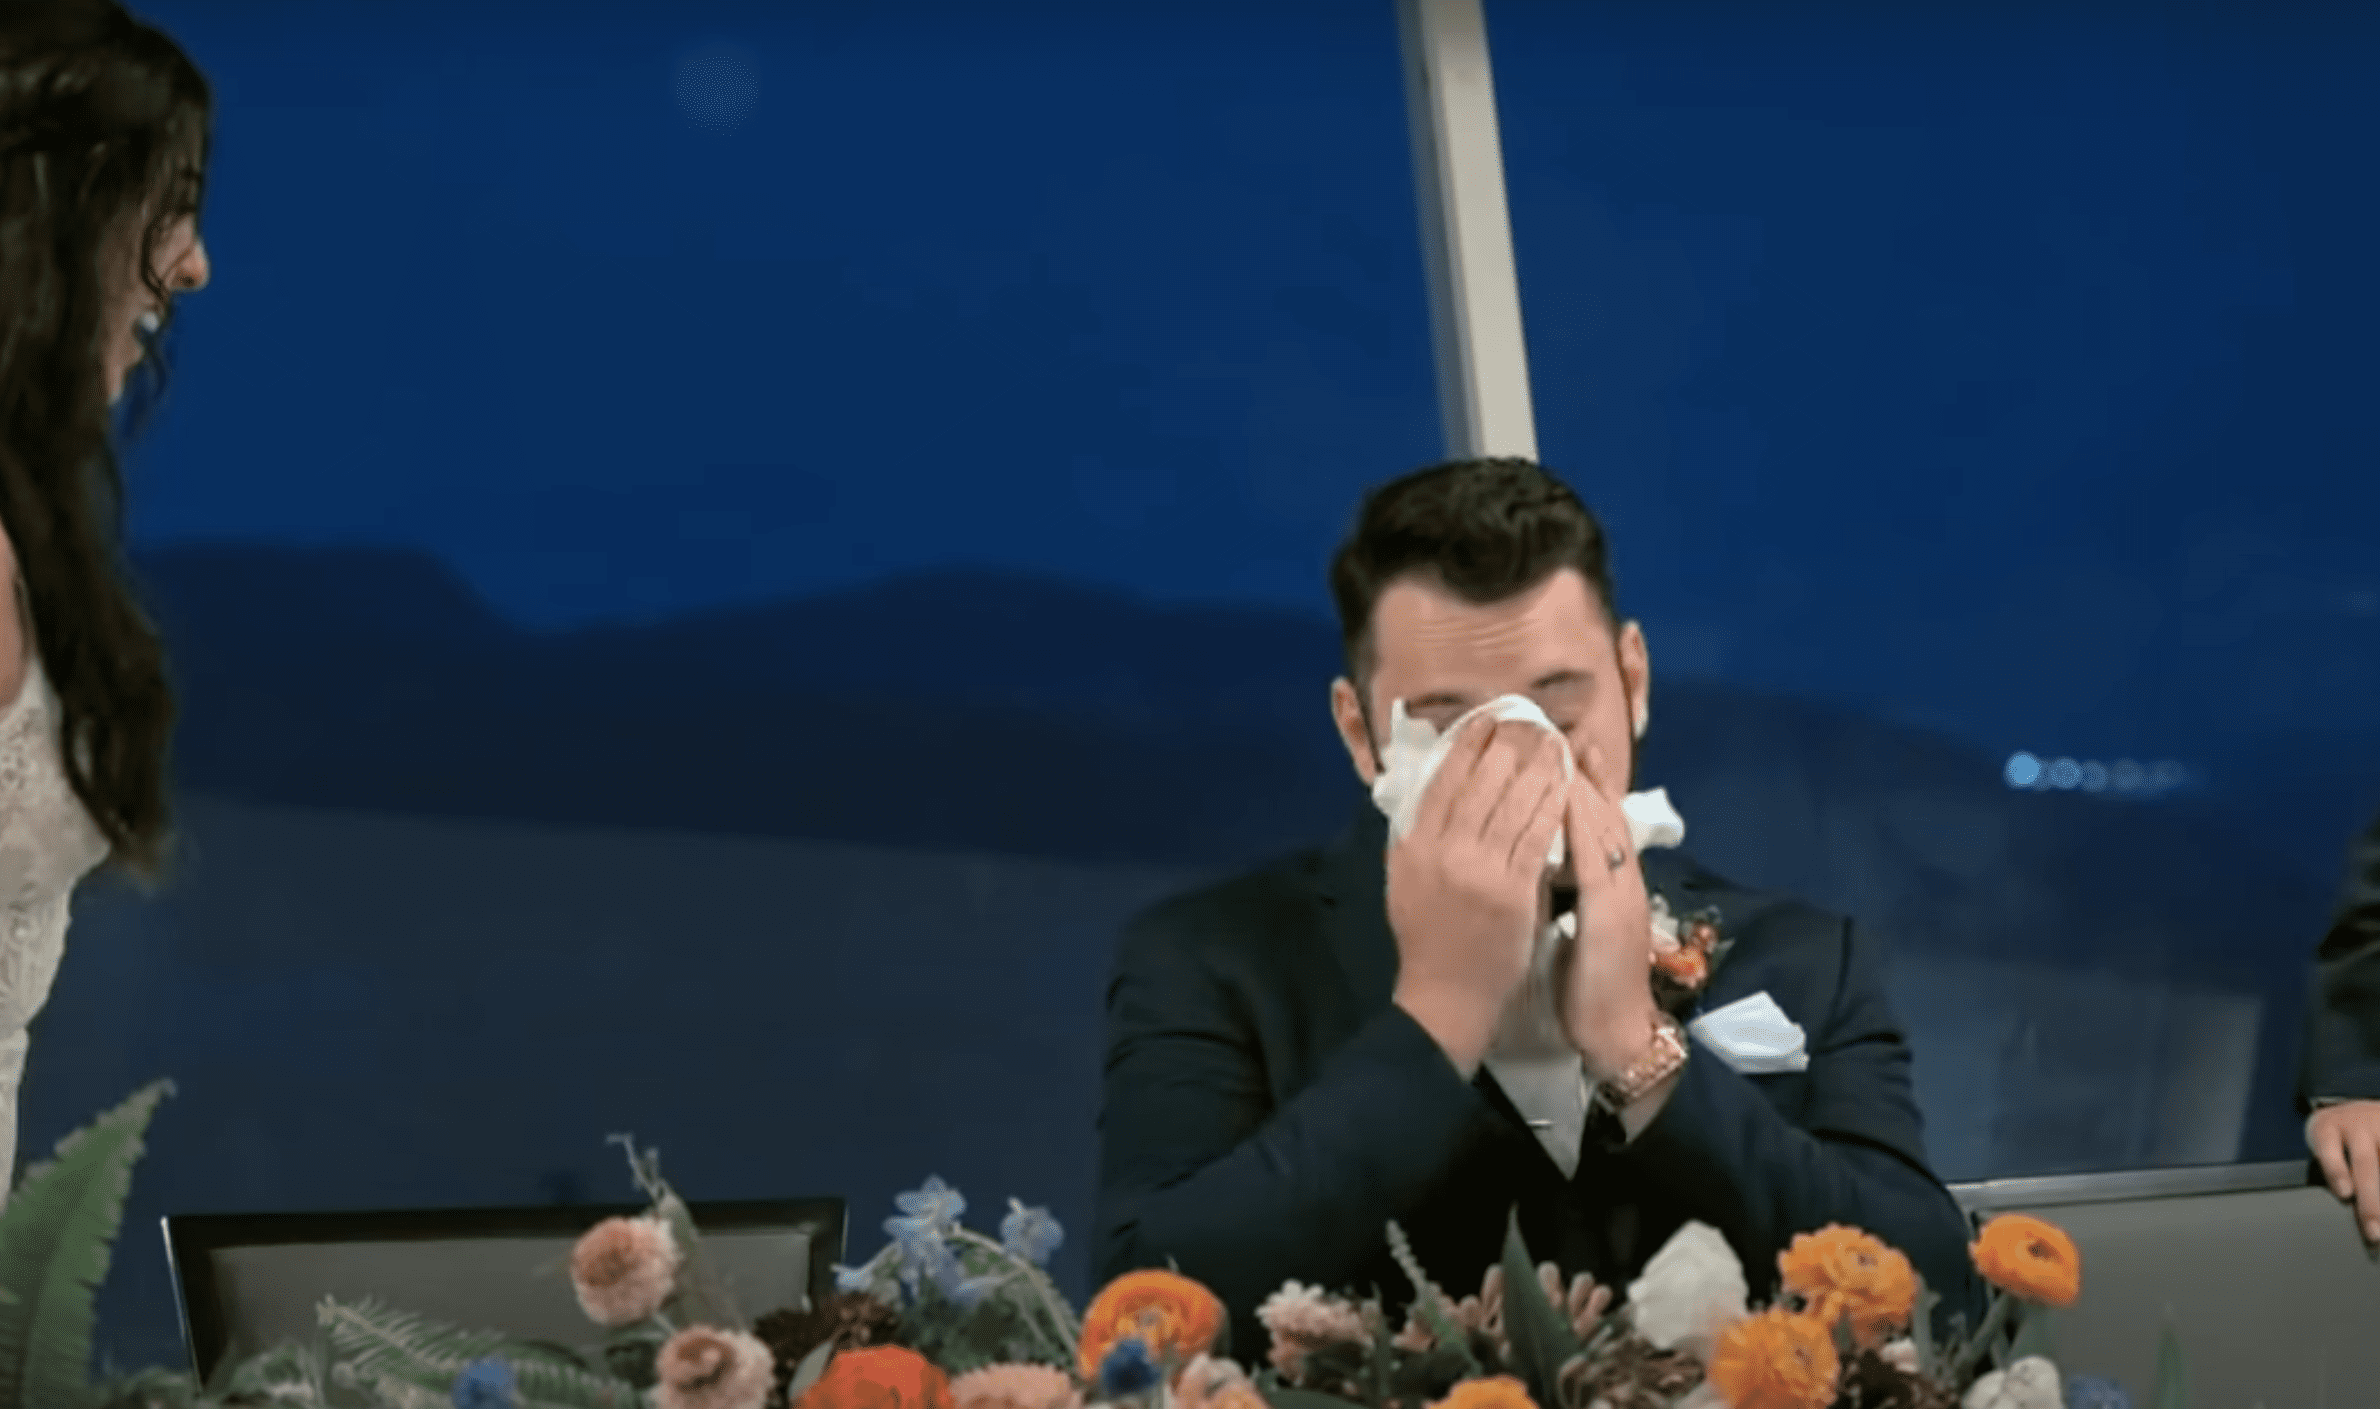 Der Bräutigam, Troy Hudson, wischt sich nach Gus' Rede die Tränen ab. | Quelle: Youtube.com/CBS Evening News